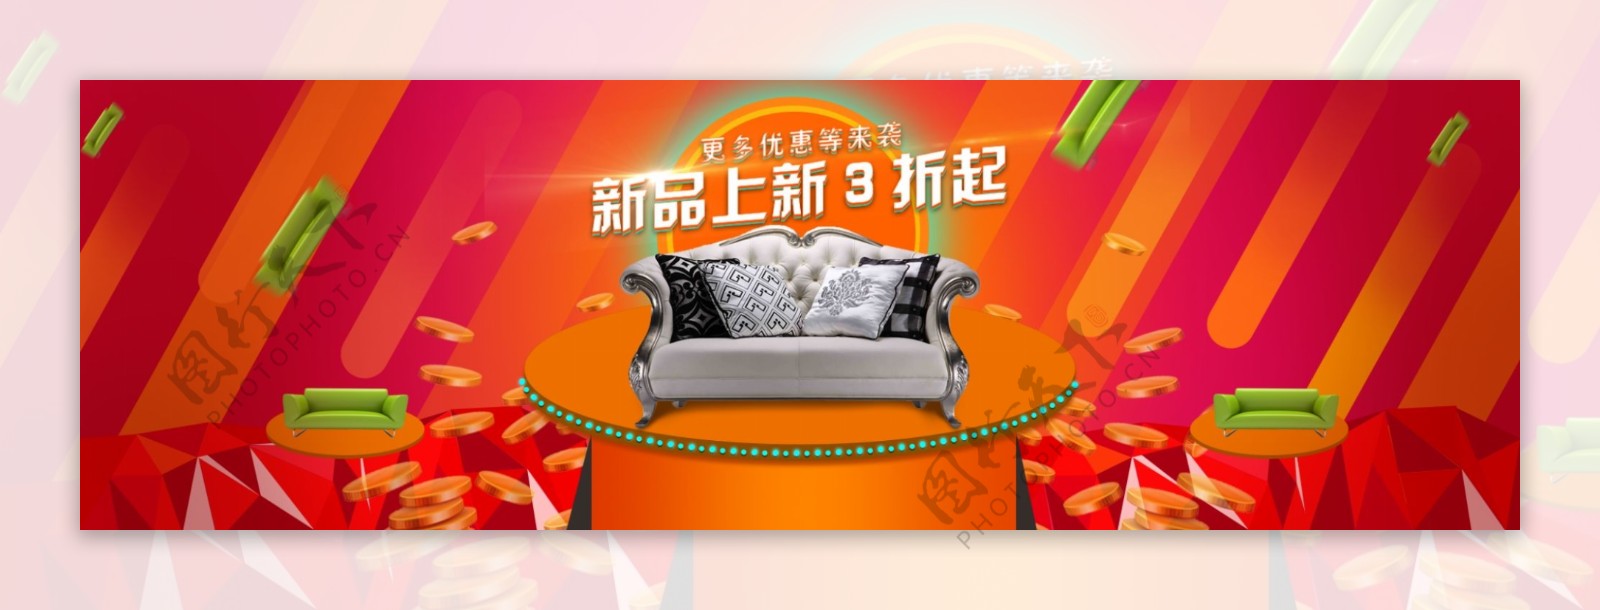 家具海报活动促销低价红色节日psd素材